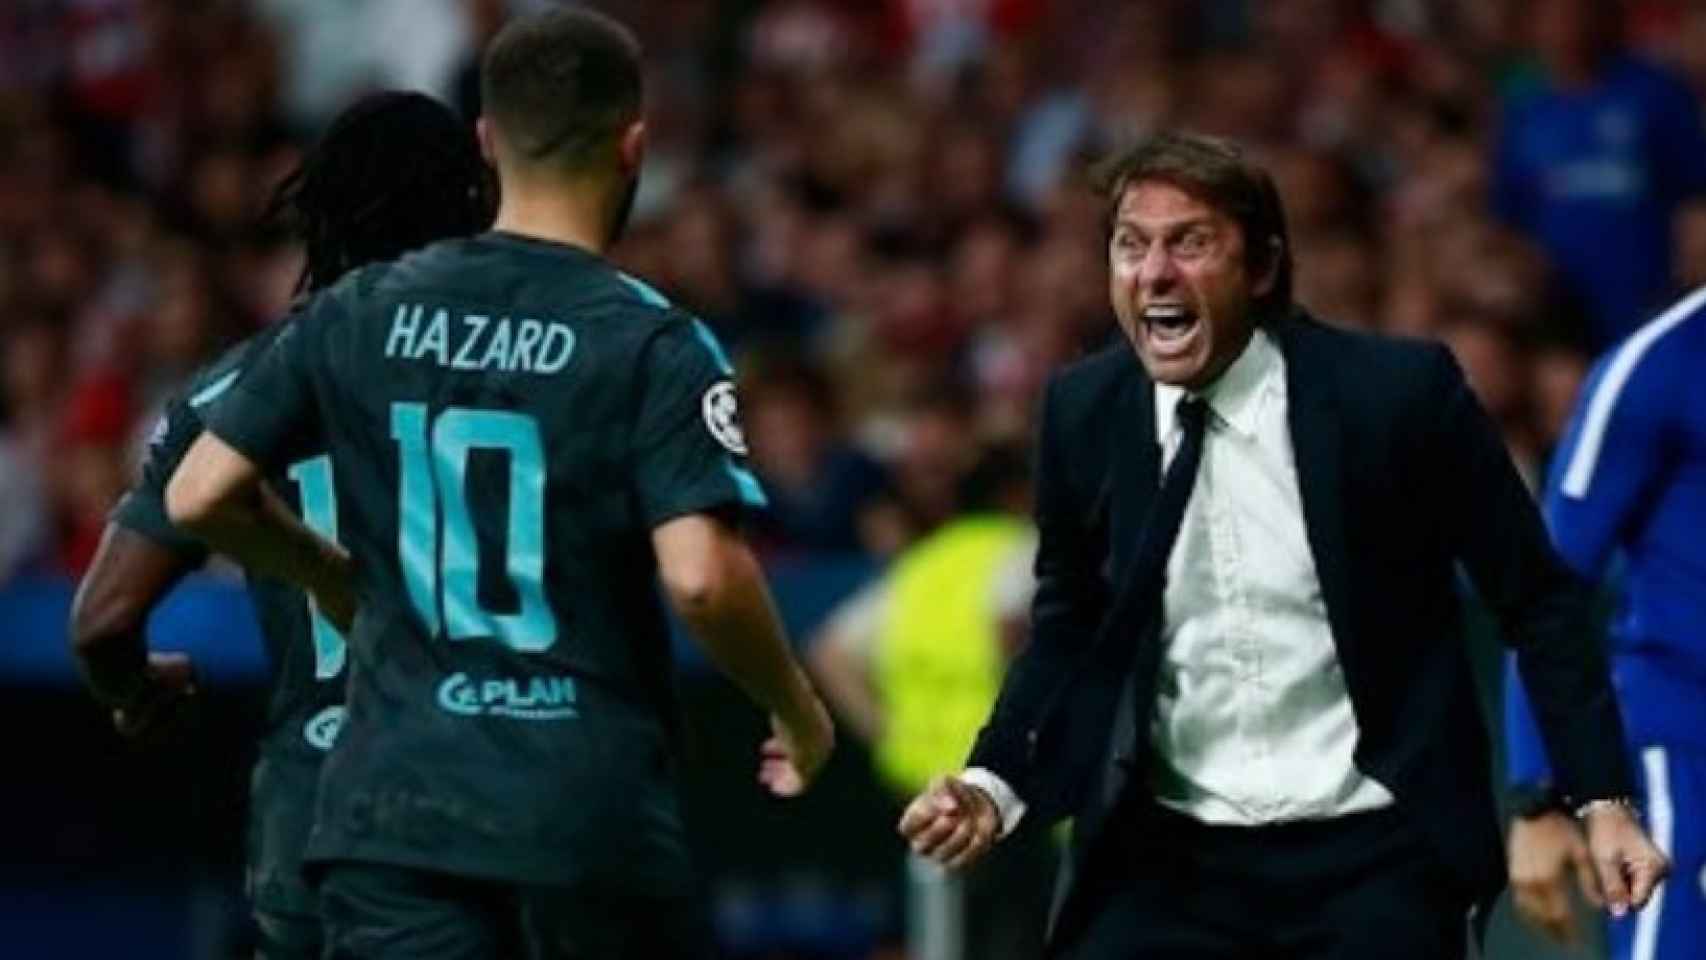 Hazard celebra con Conte. Foto: chelseafc.com